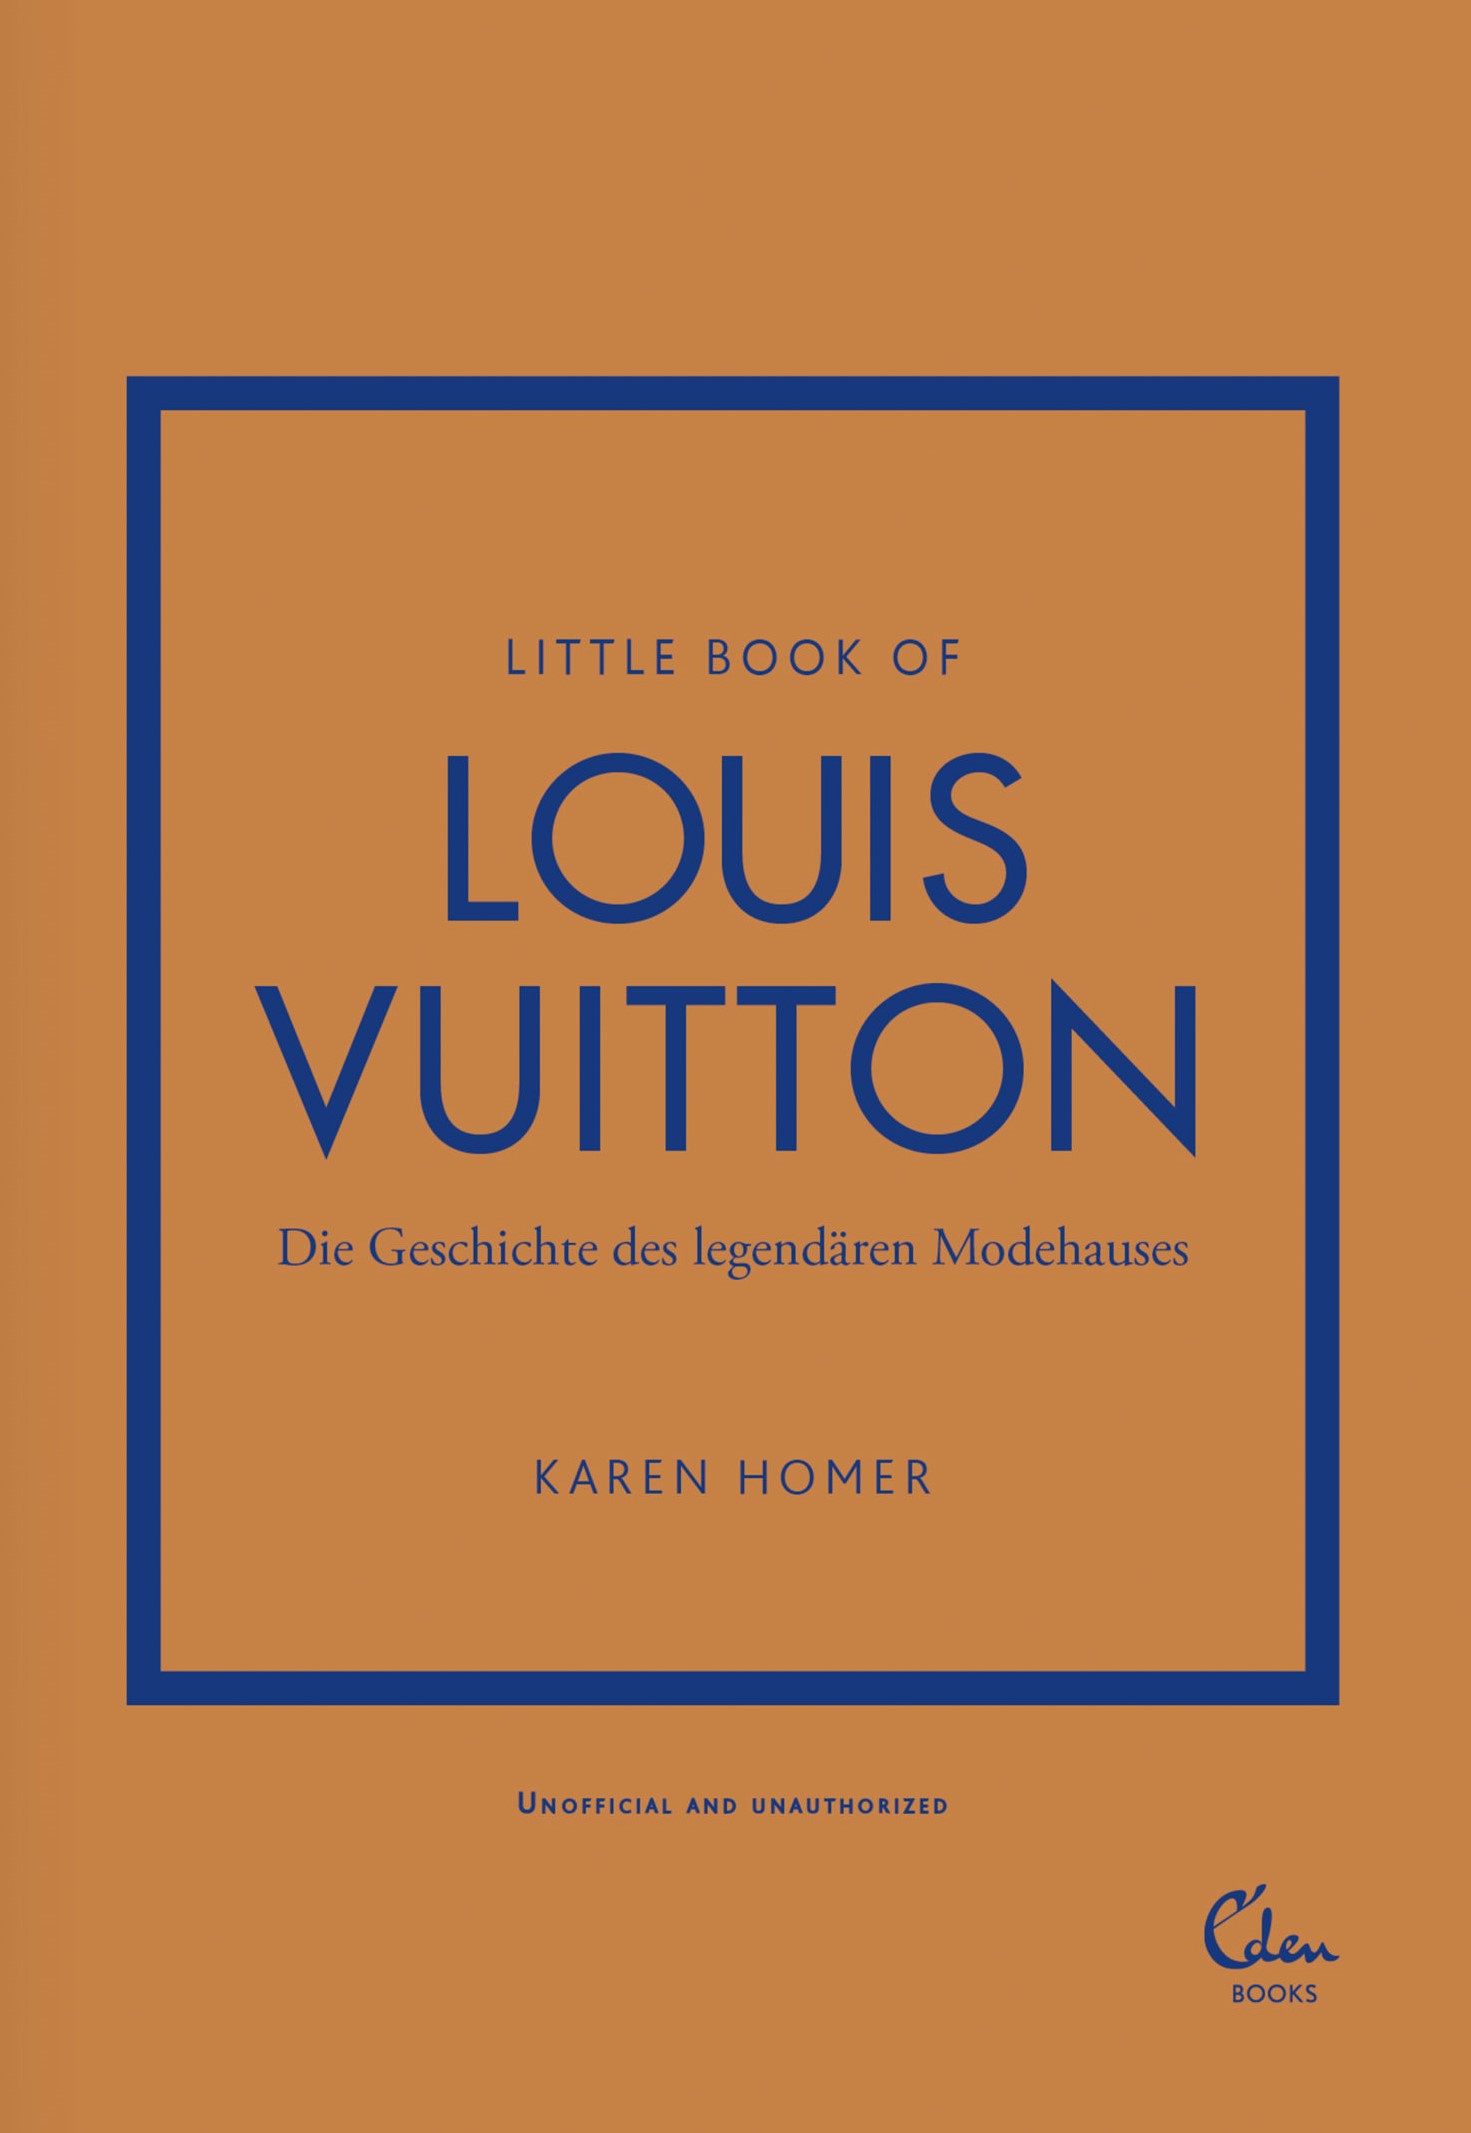 Buchcover: Karen Homer: Little Book of Louis Vuitton